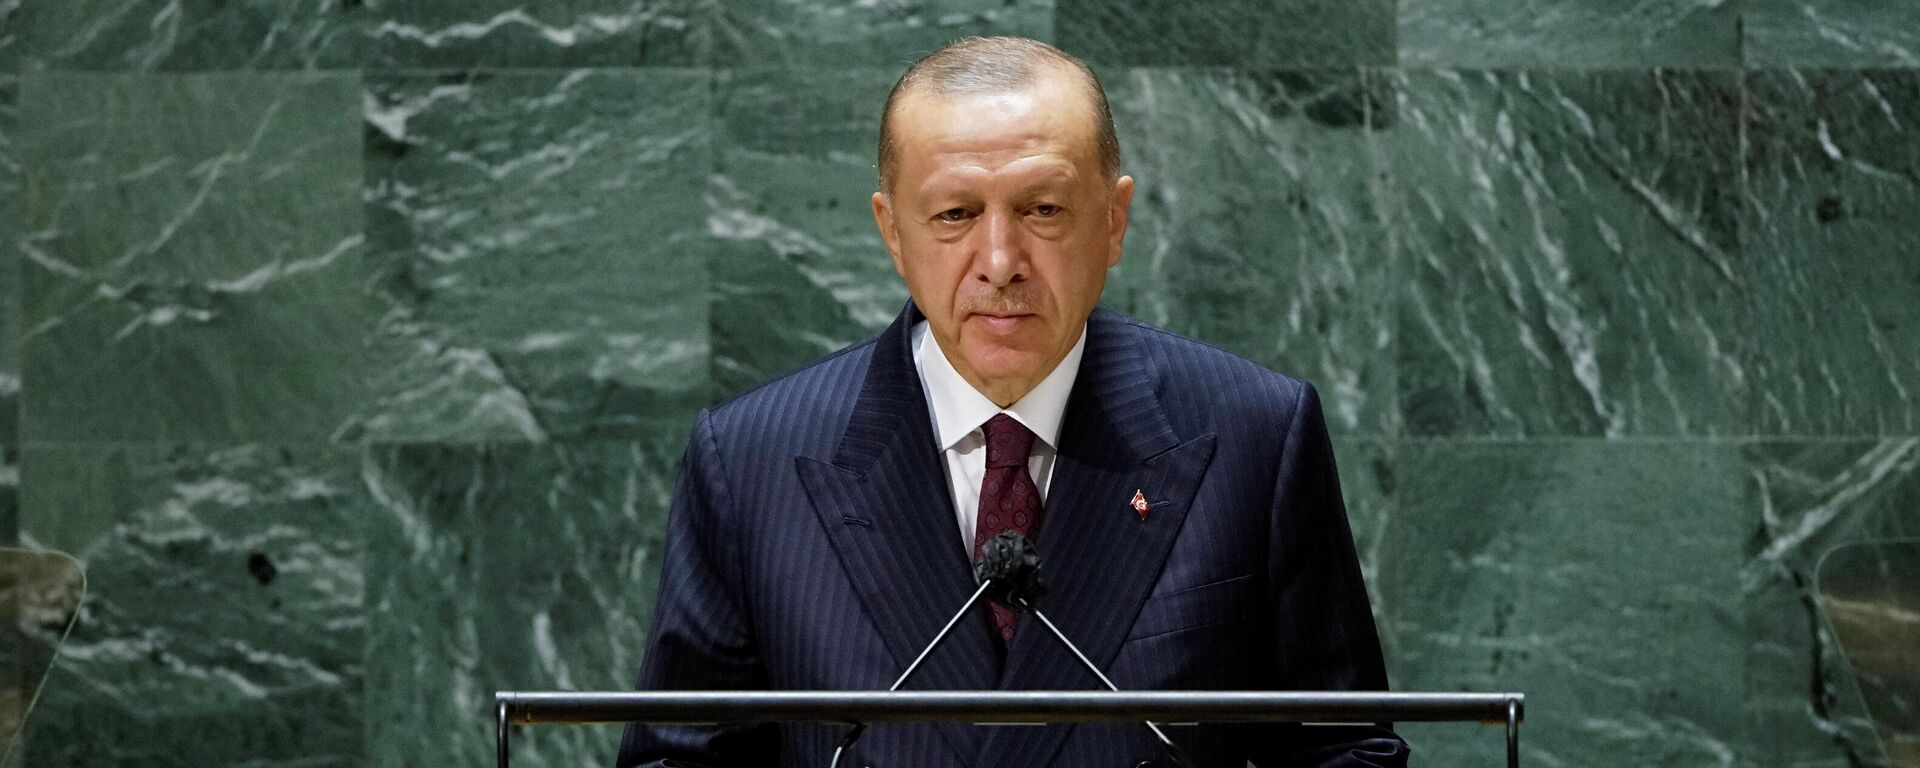 Turkijos prezidentas Tajipas Erdoganas - Sputnik Lietuva, 1920, 30.09.2021